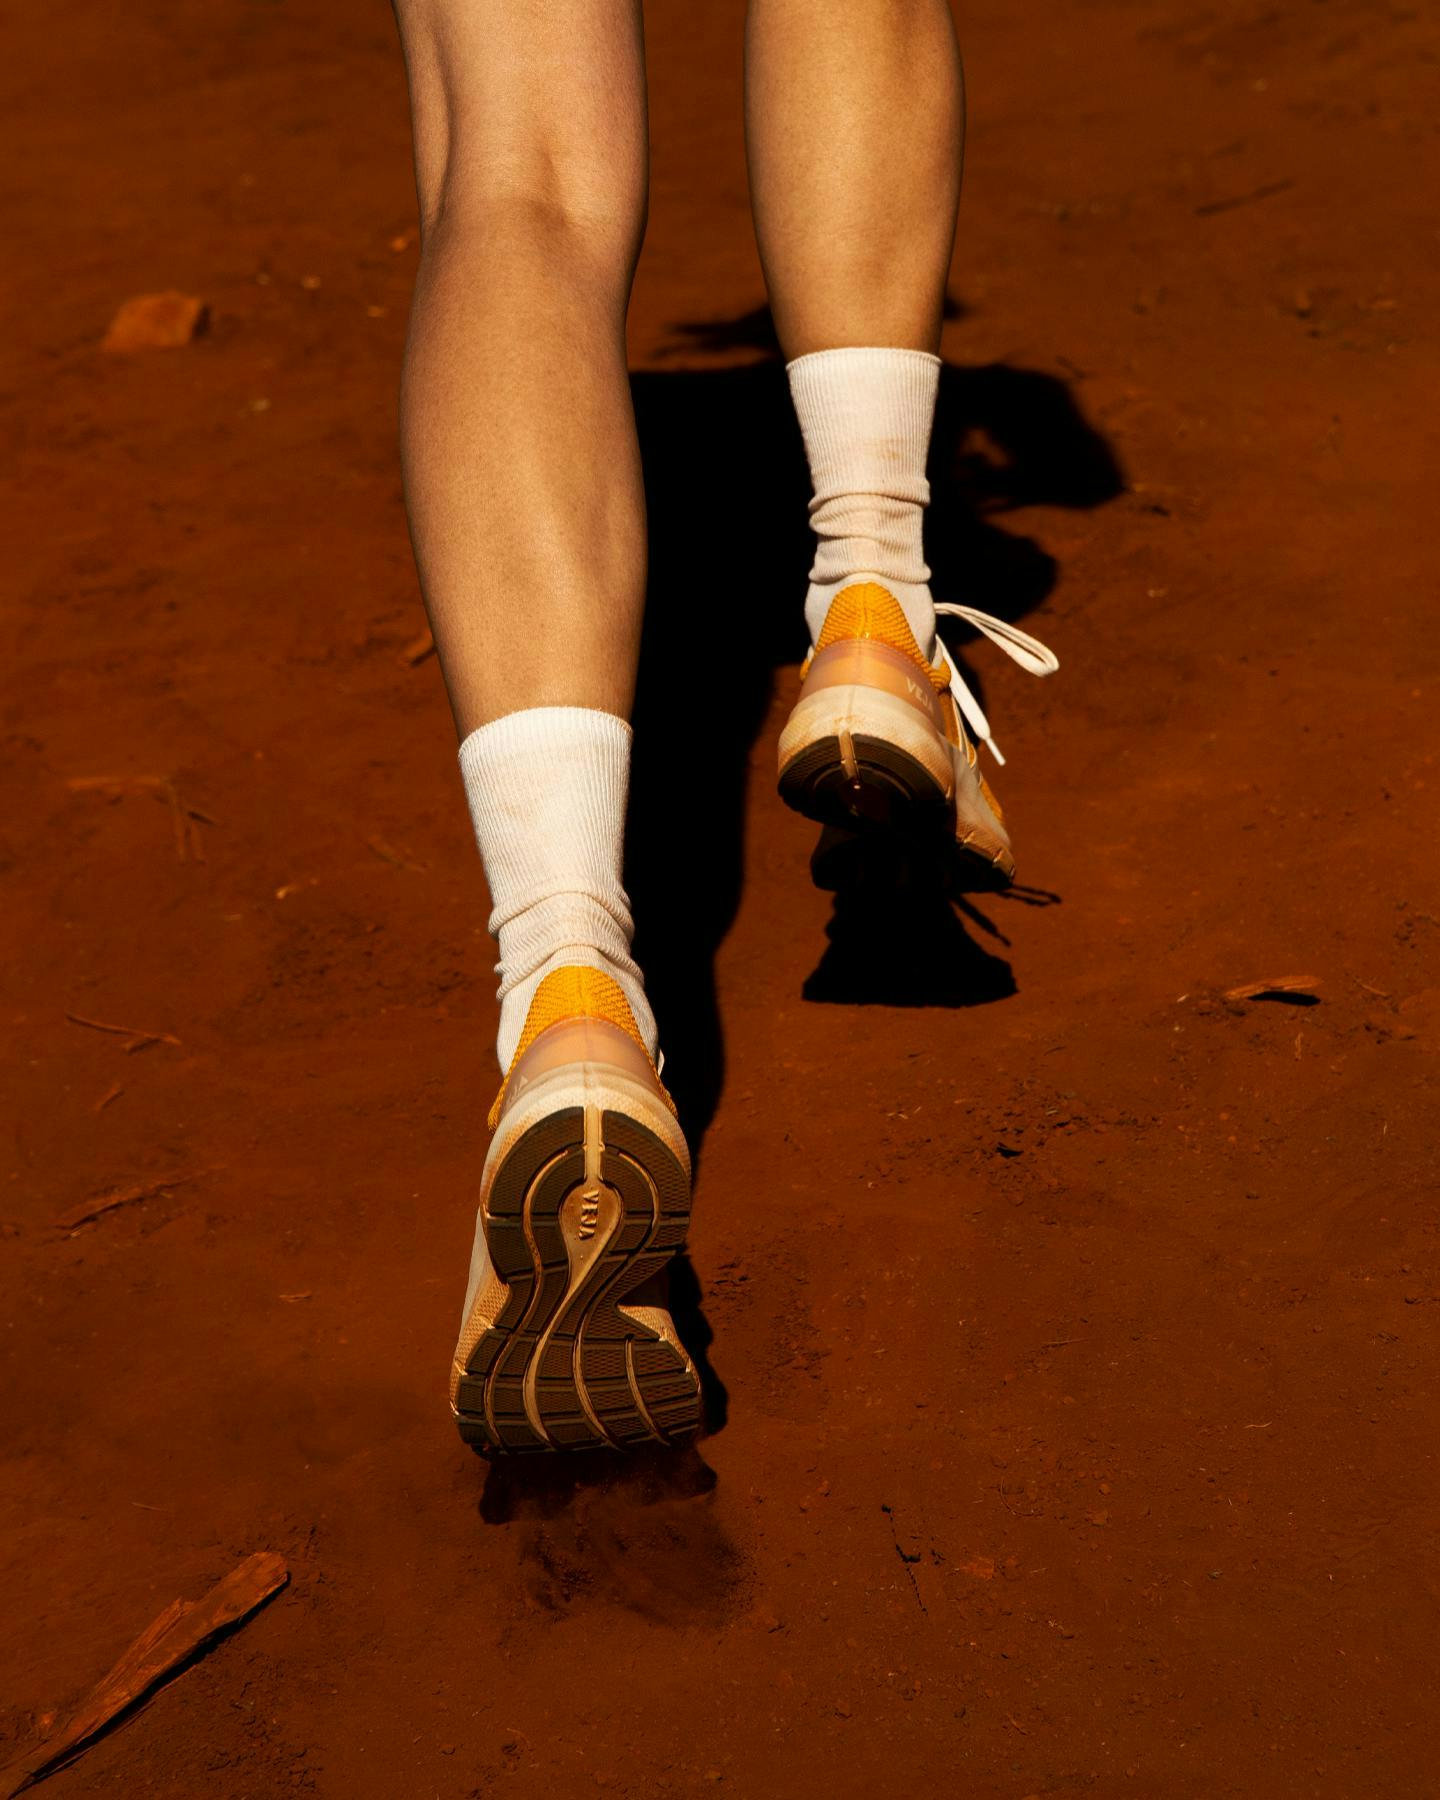 clothing footwear shoe sneaker person walking sandal